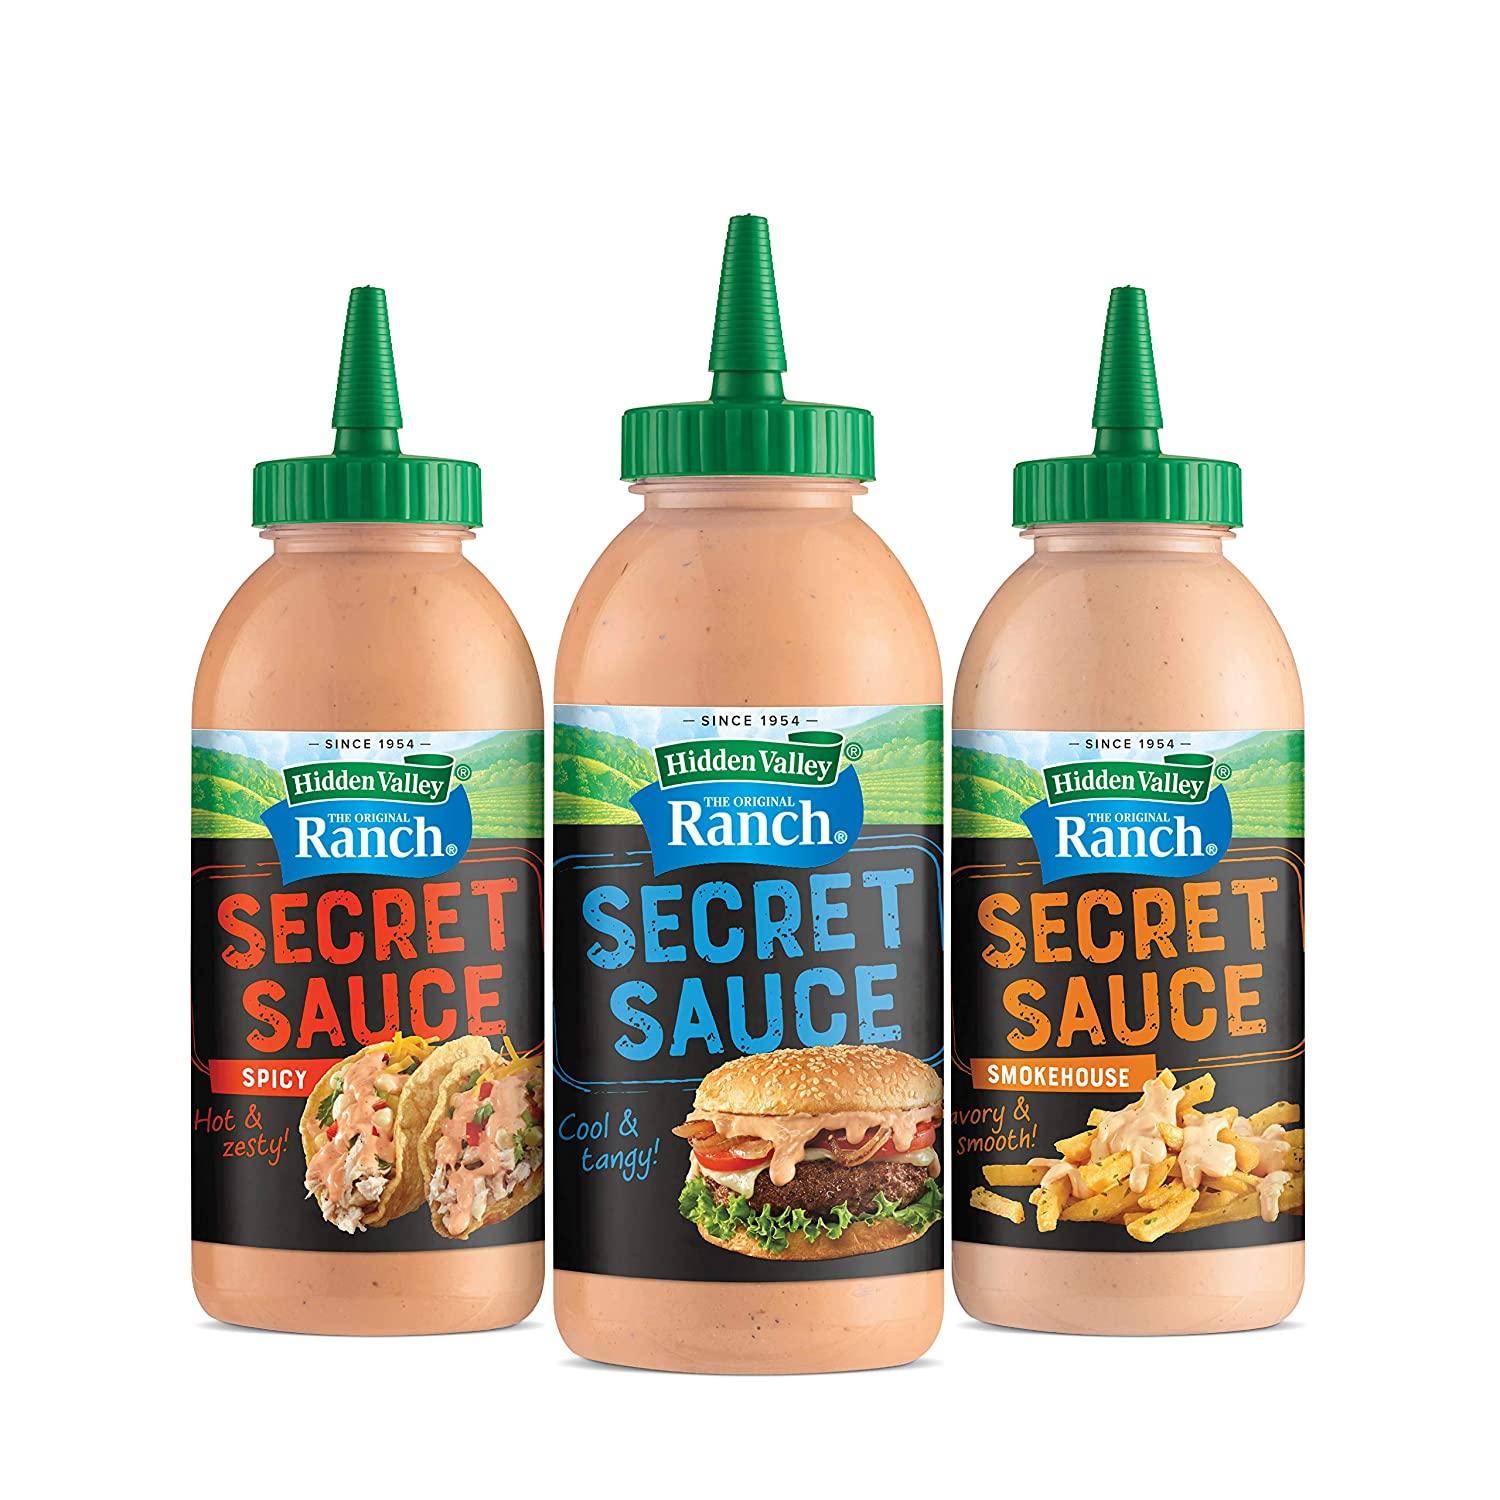 Hidden Valley Ranch Secret Sauces  Snack recipes, Meat appetizers, Hidden  valley recipes